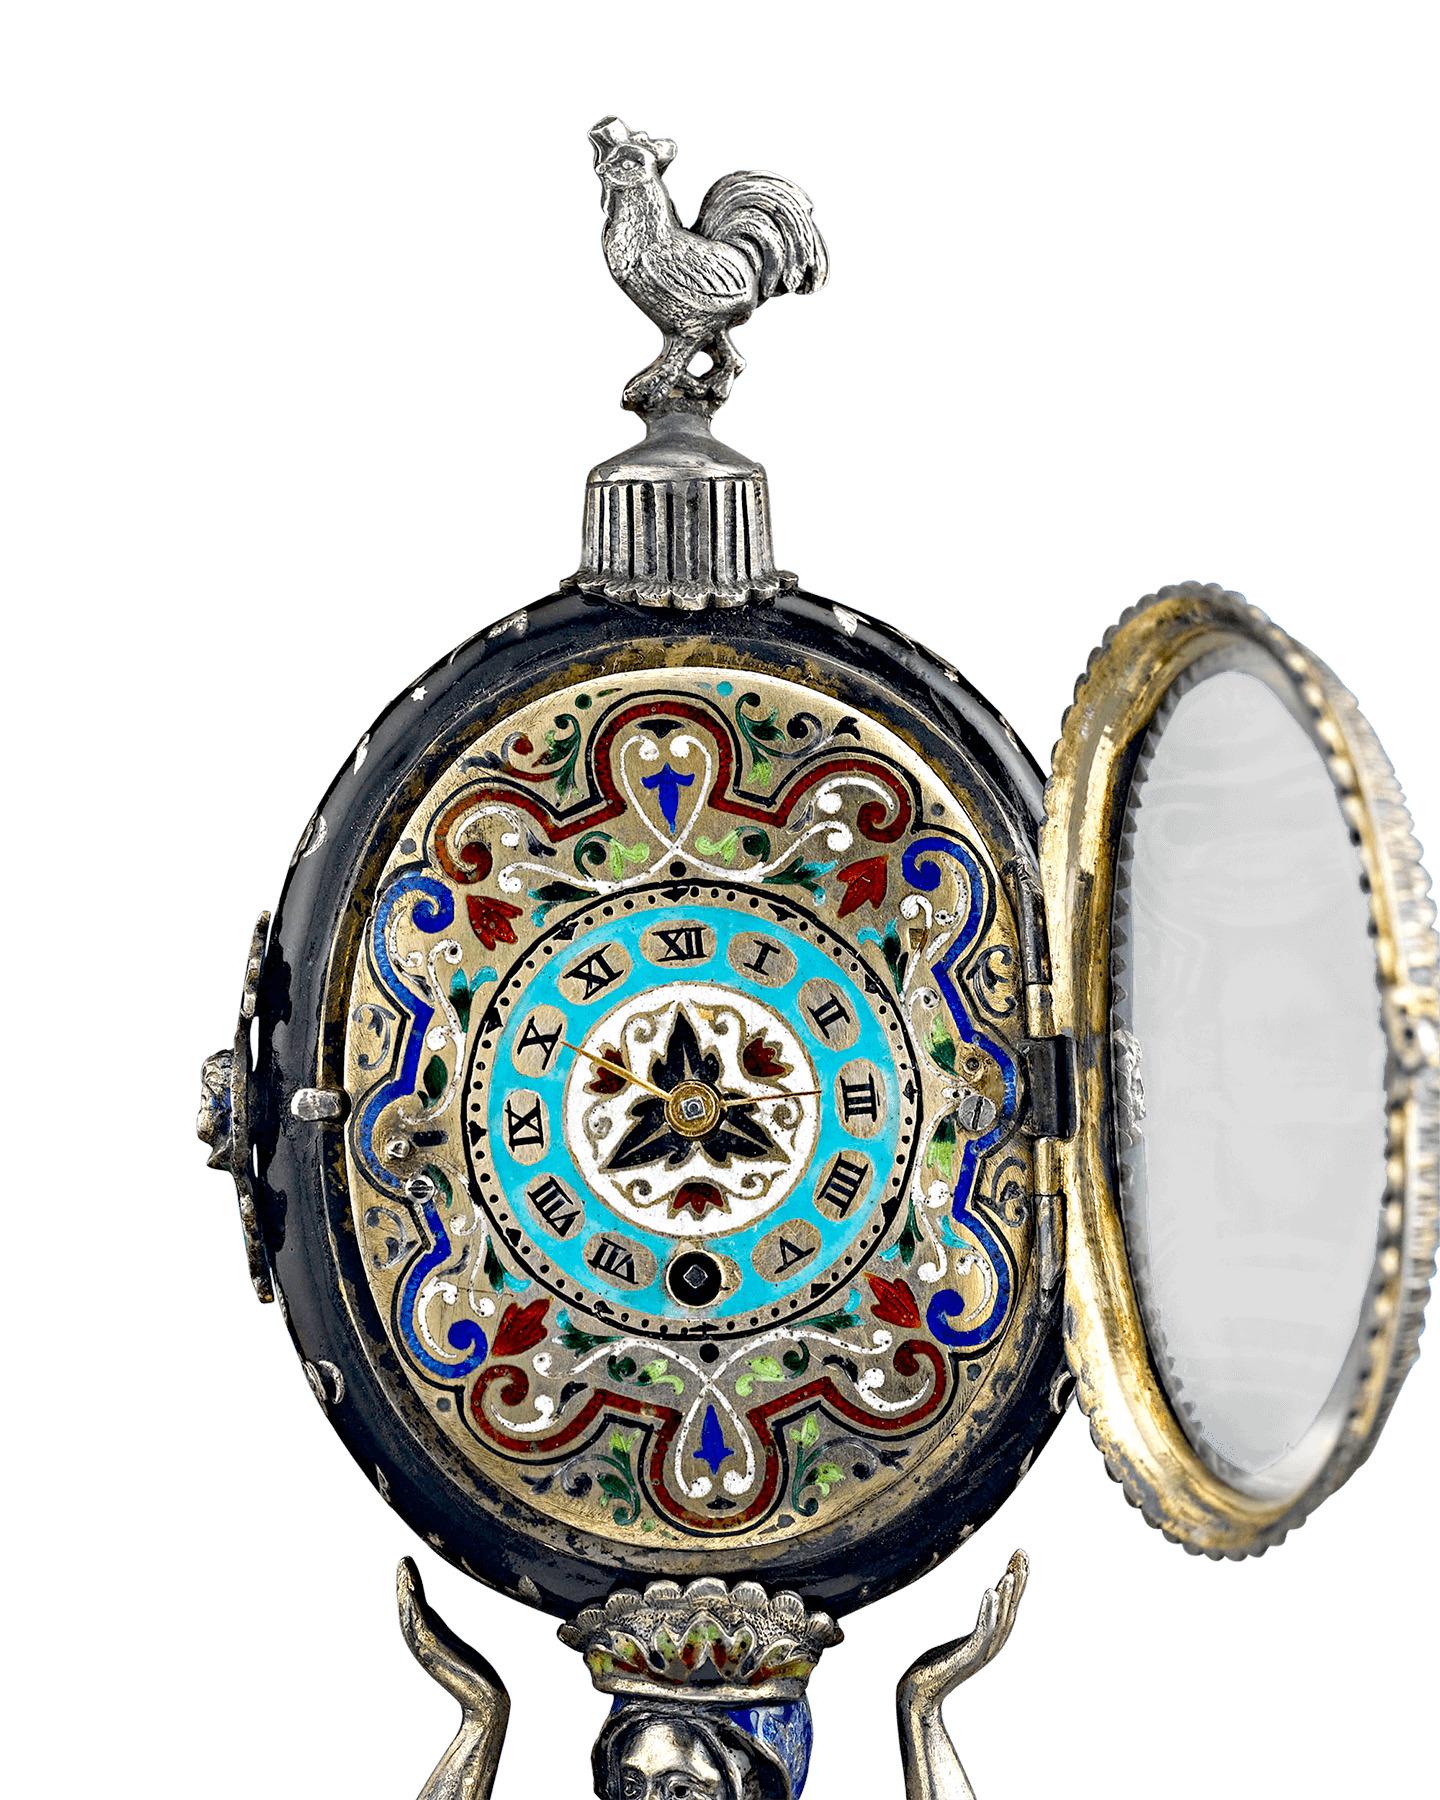 Diese prächtige Wiener Uhr ist ein Werk von außergewöhnlicher Detailtreue, das die Kunstform des Emaillierens auf ein neues Niveau hebt. Der aufwändig gestaltete Zeitmesser ruht auf dem Kopf eines Soldaten, der auf einem von Sphinxen bevölkerten